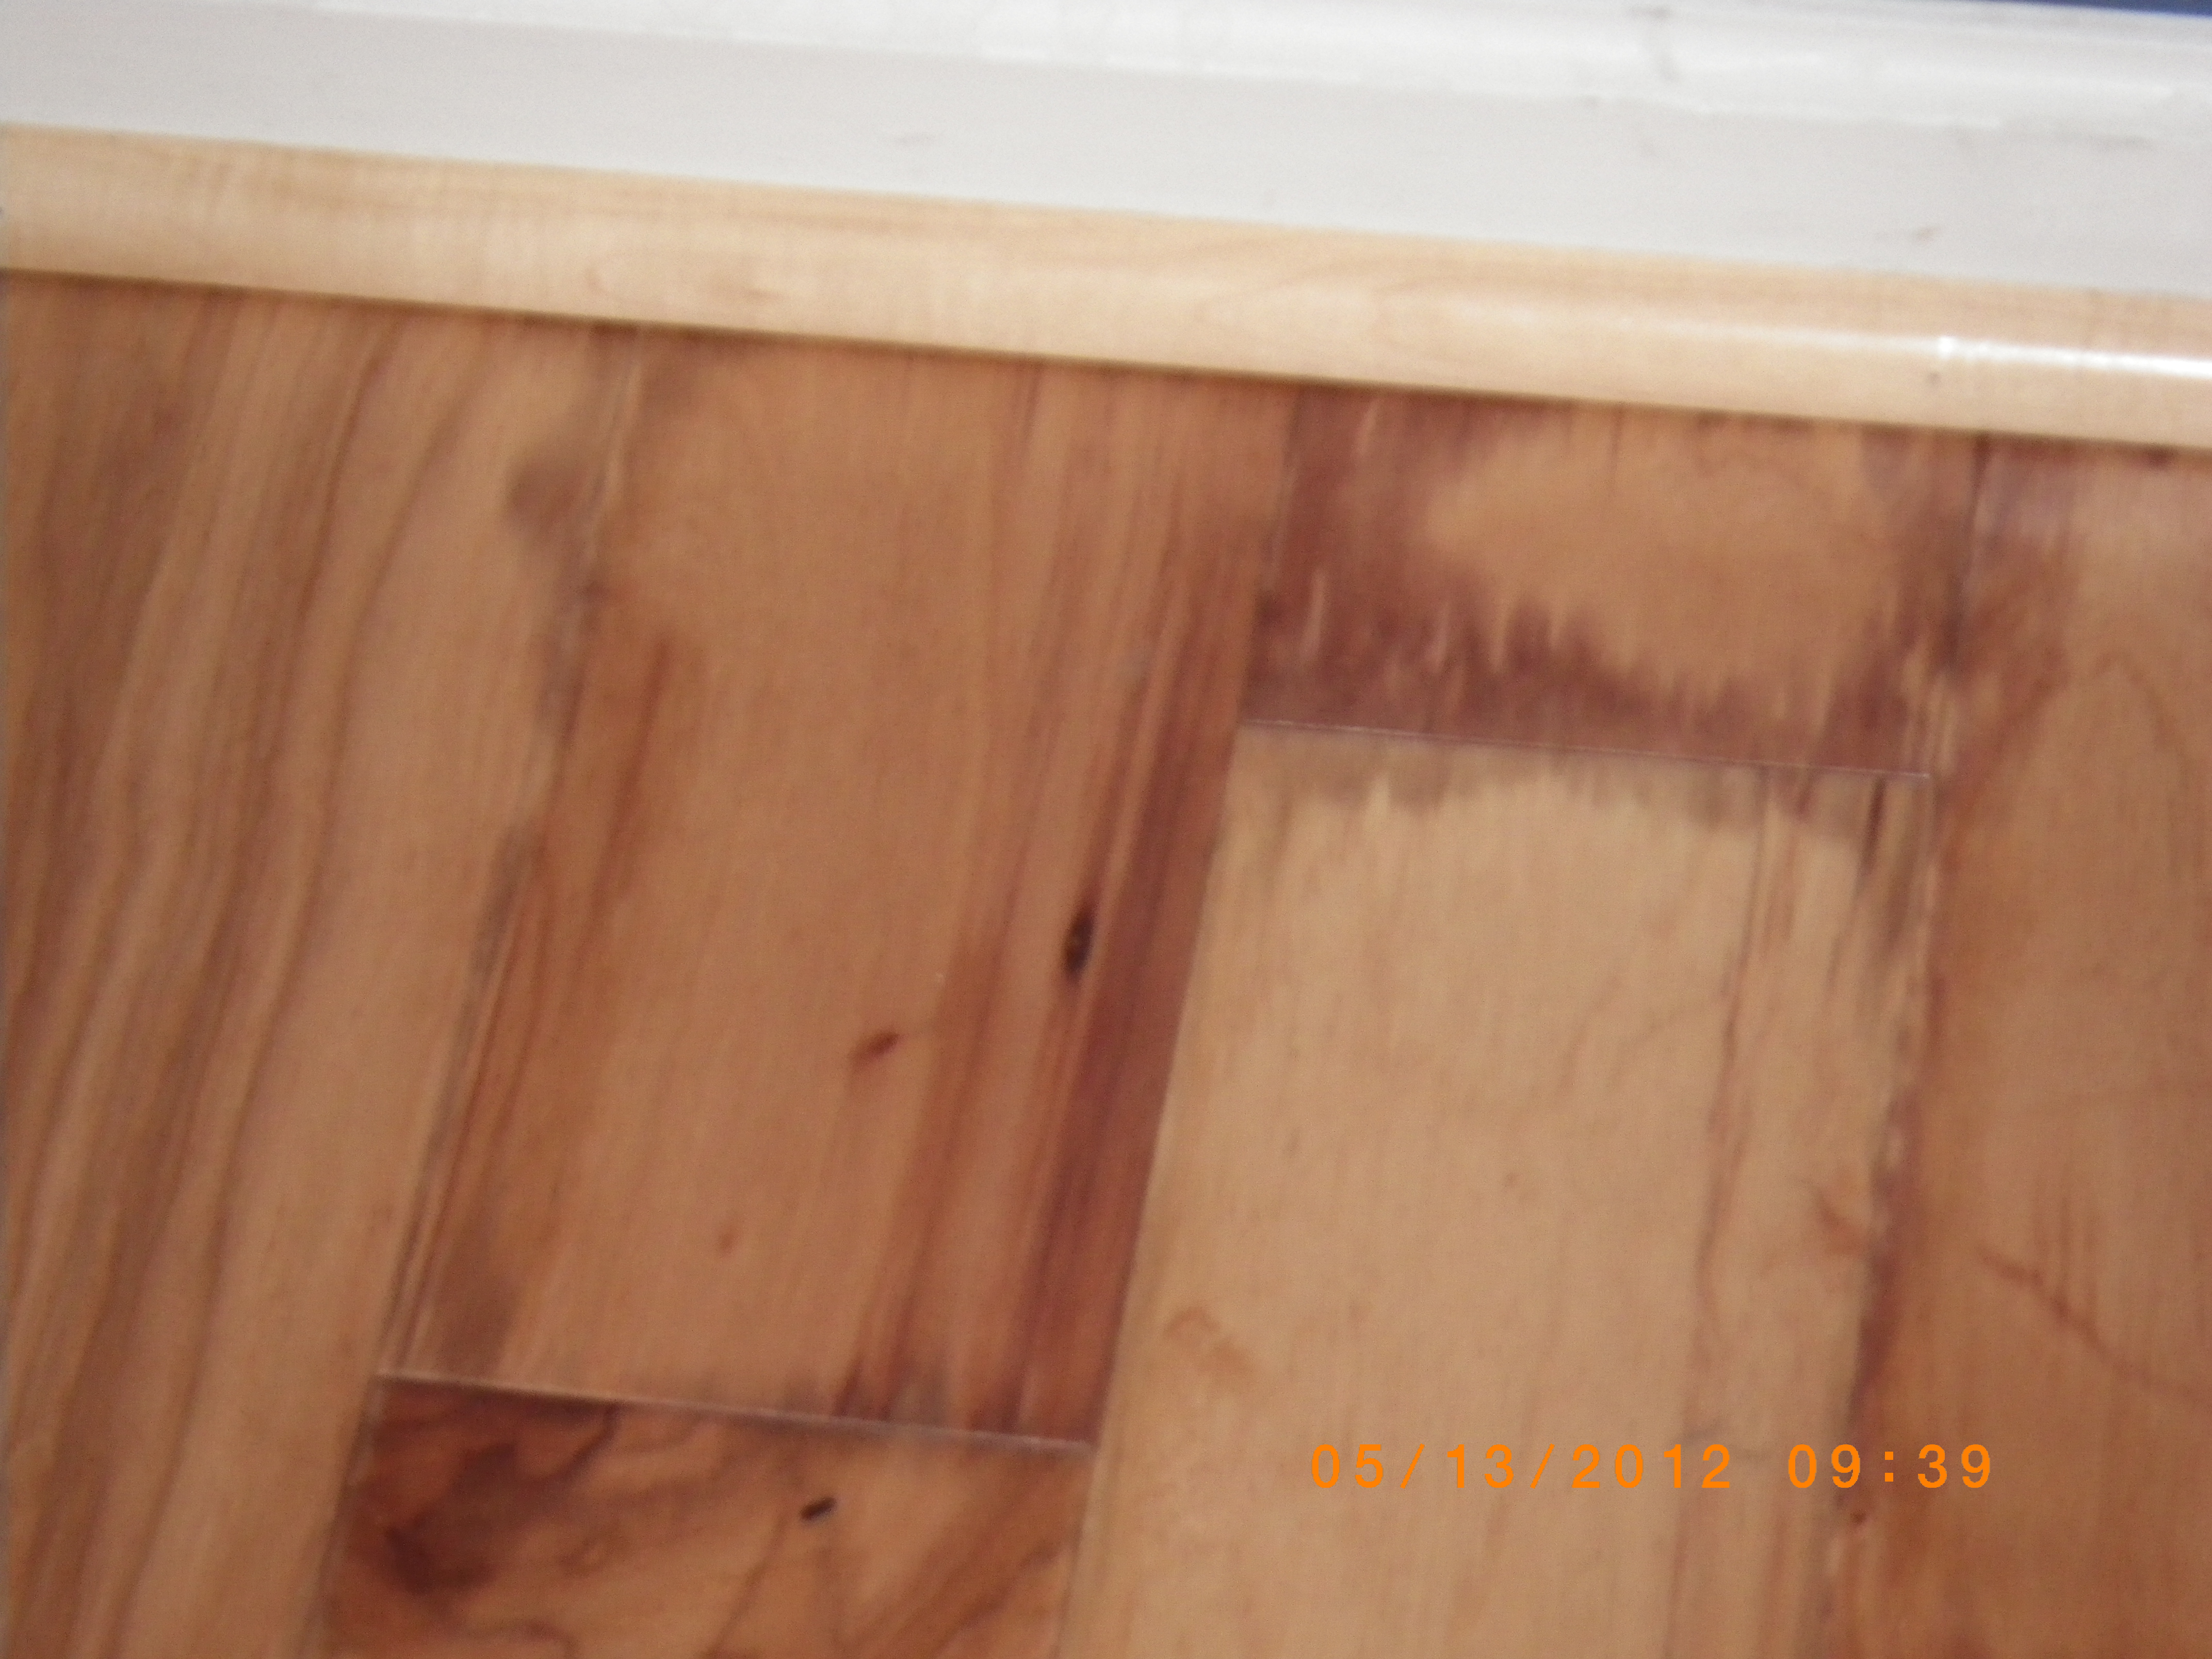 Hardwood Floors, Damaged Hardwood Floors